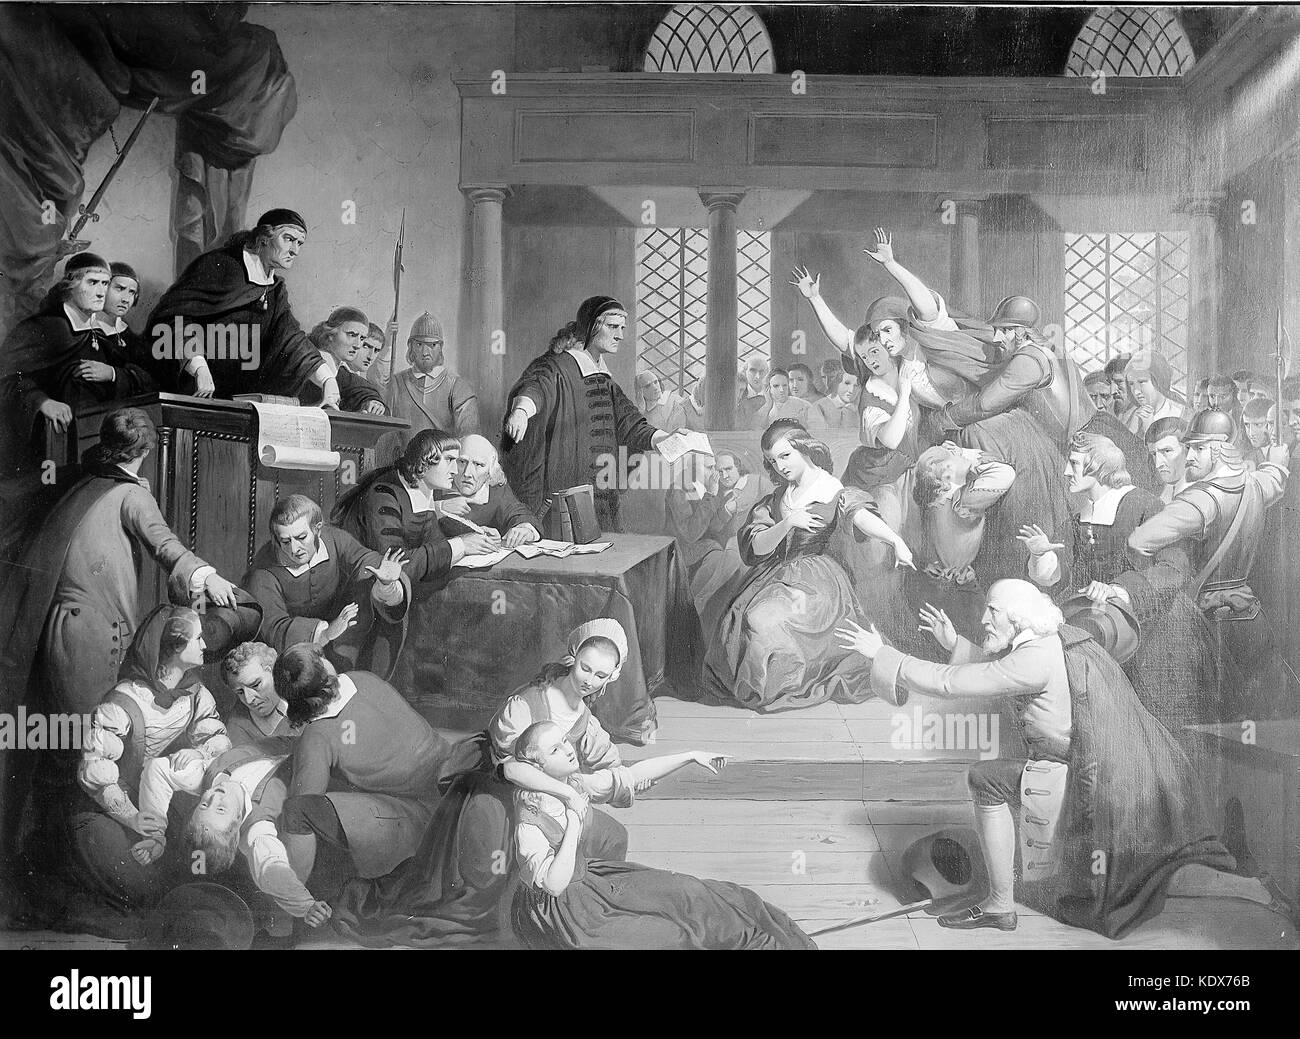 Salem processo alle streghe, 1692 - 1693, prova di george jacobs di Salem per stregoneria Foto Stock